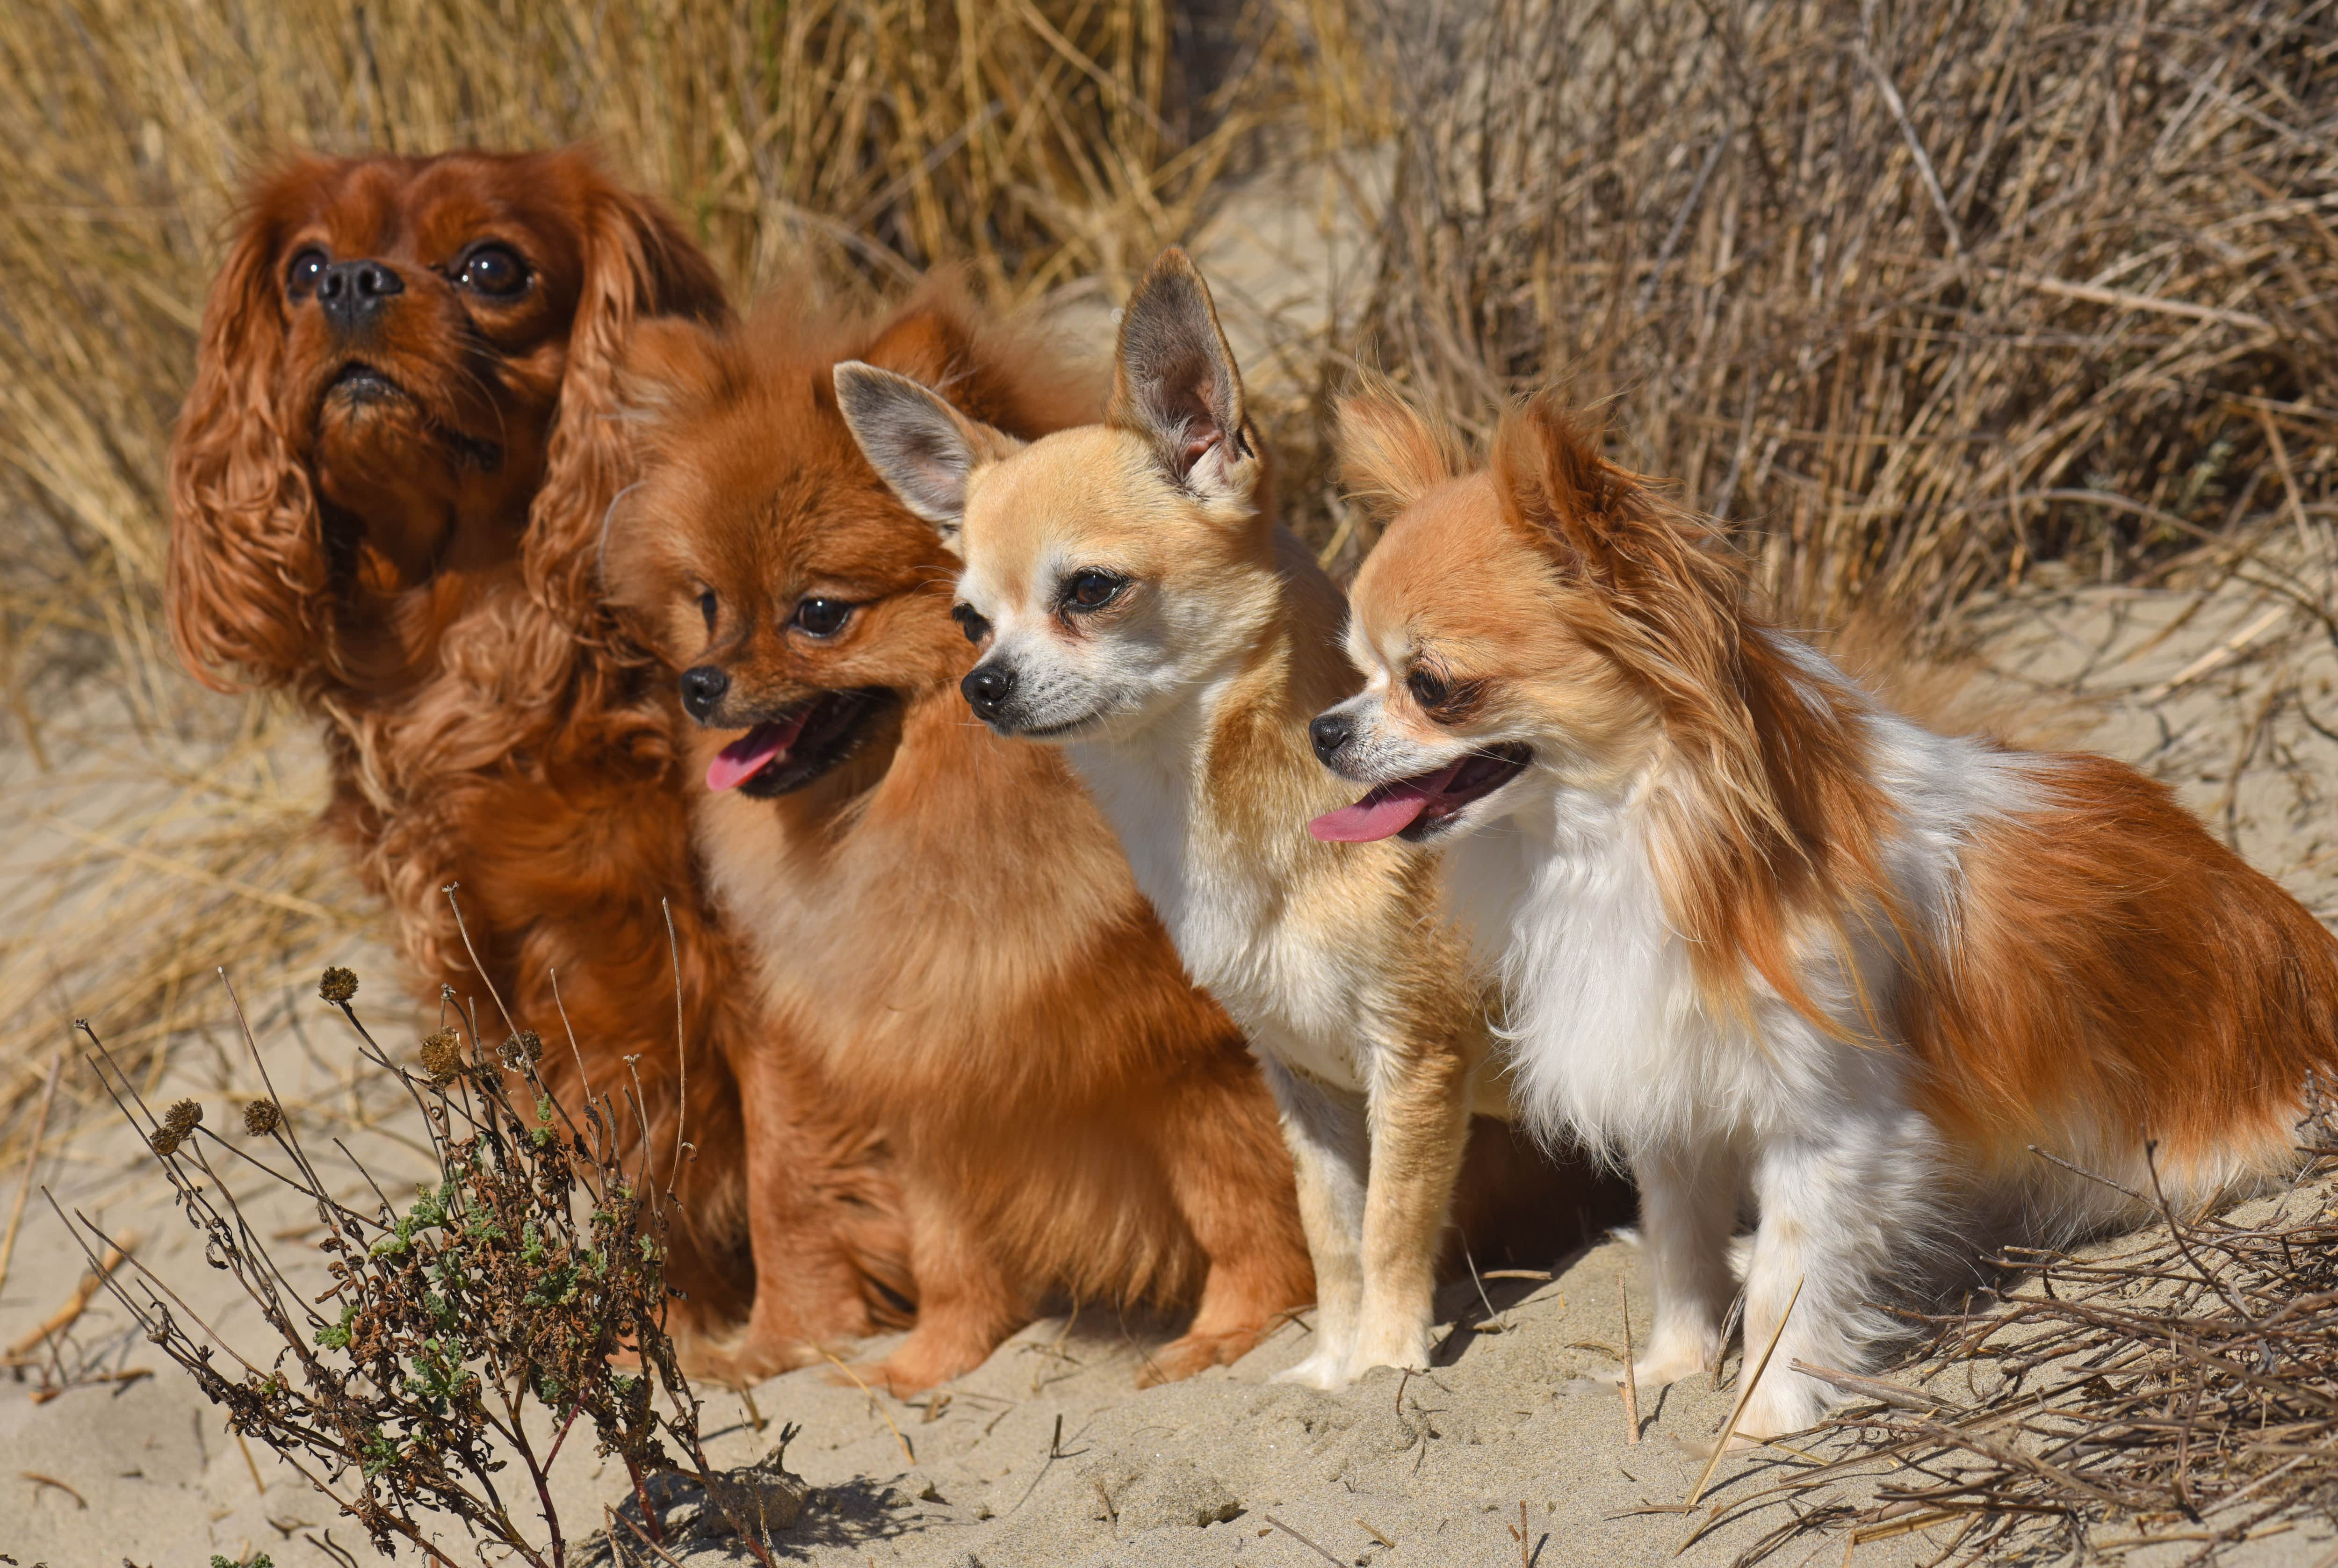 Razas de perros más propensas a contraer la leishmaniosis canina